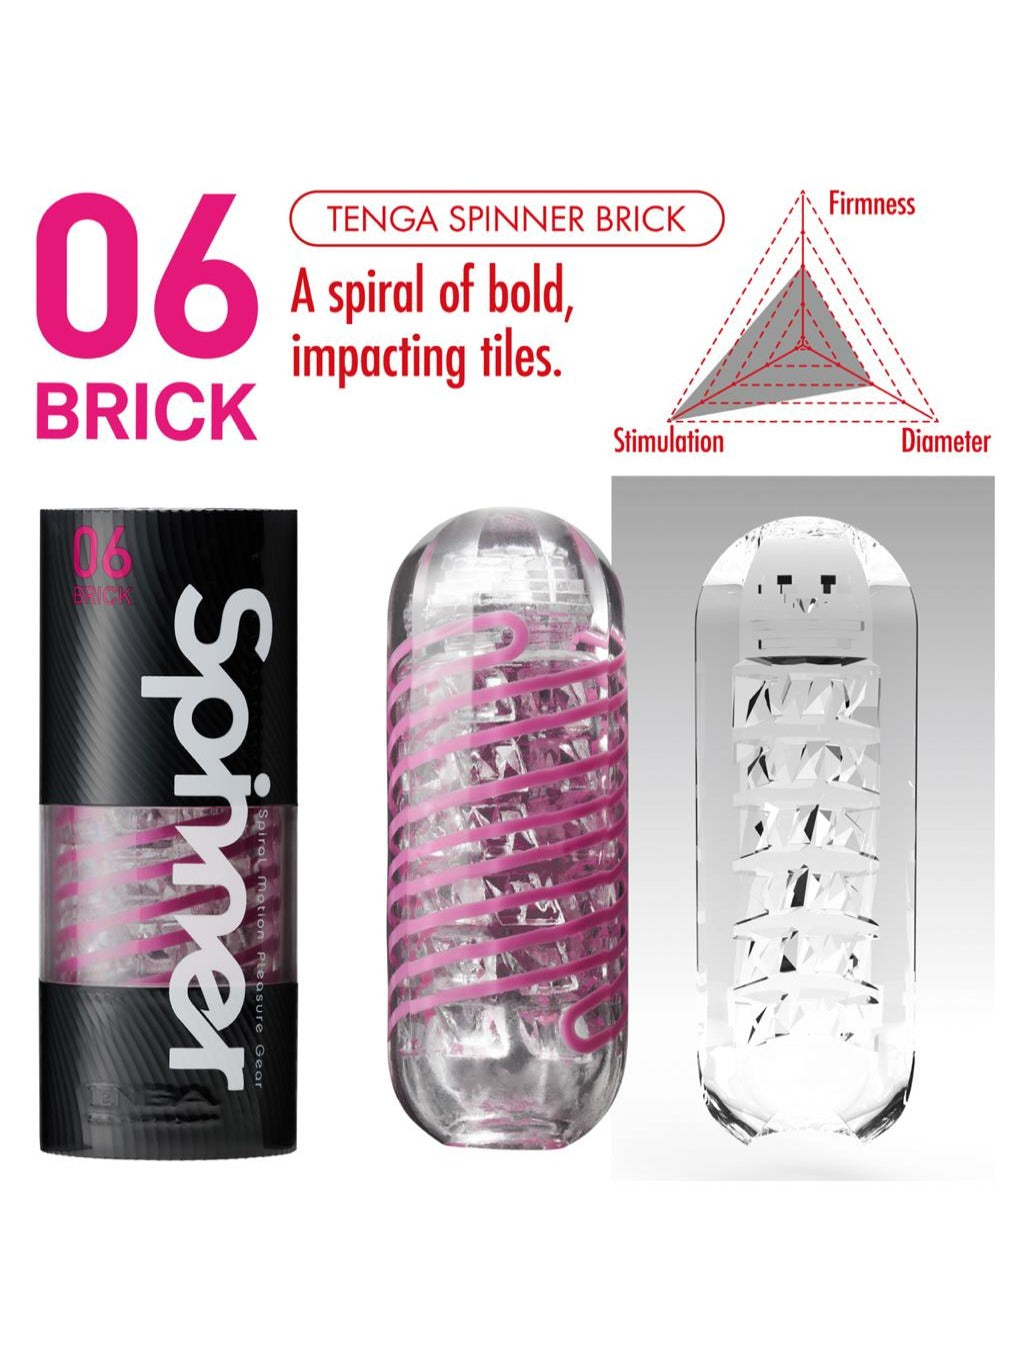 Tenga Spinner - Brick